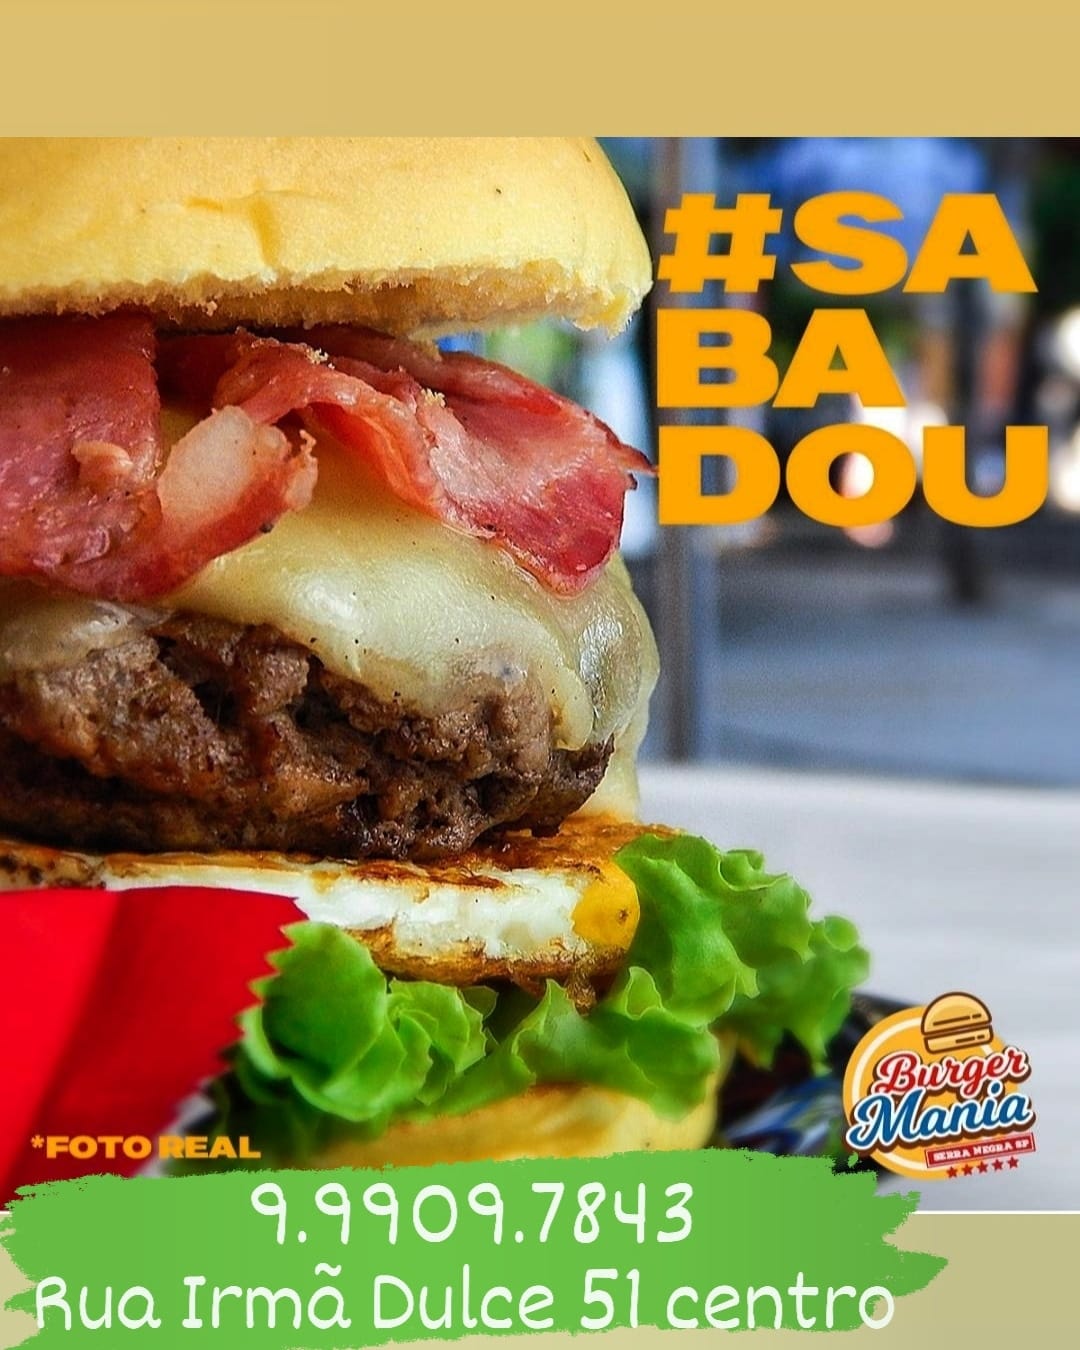 Burger Mania tem sábado de hambúrgueres artesanais 100% carne